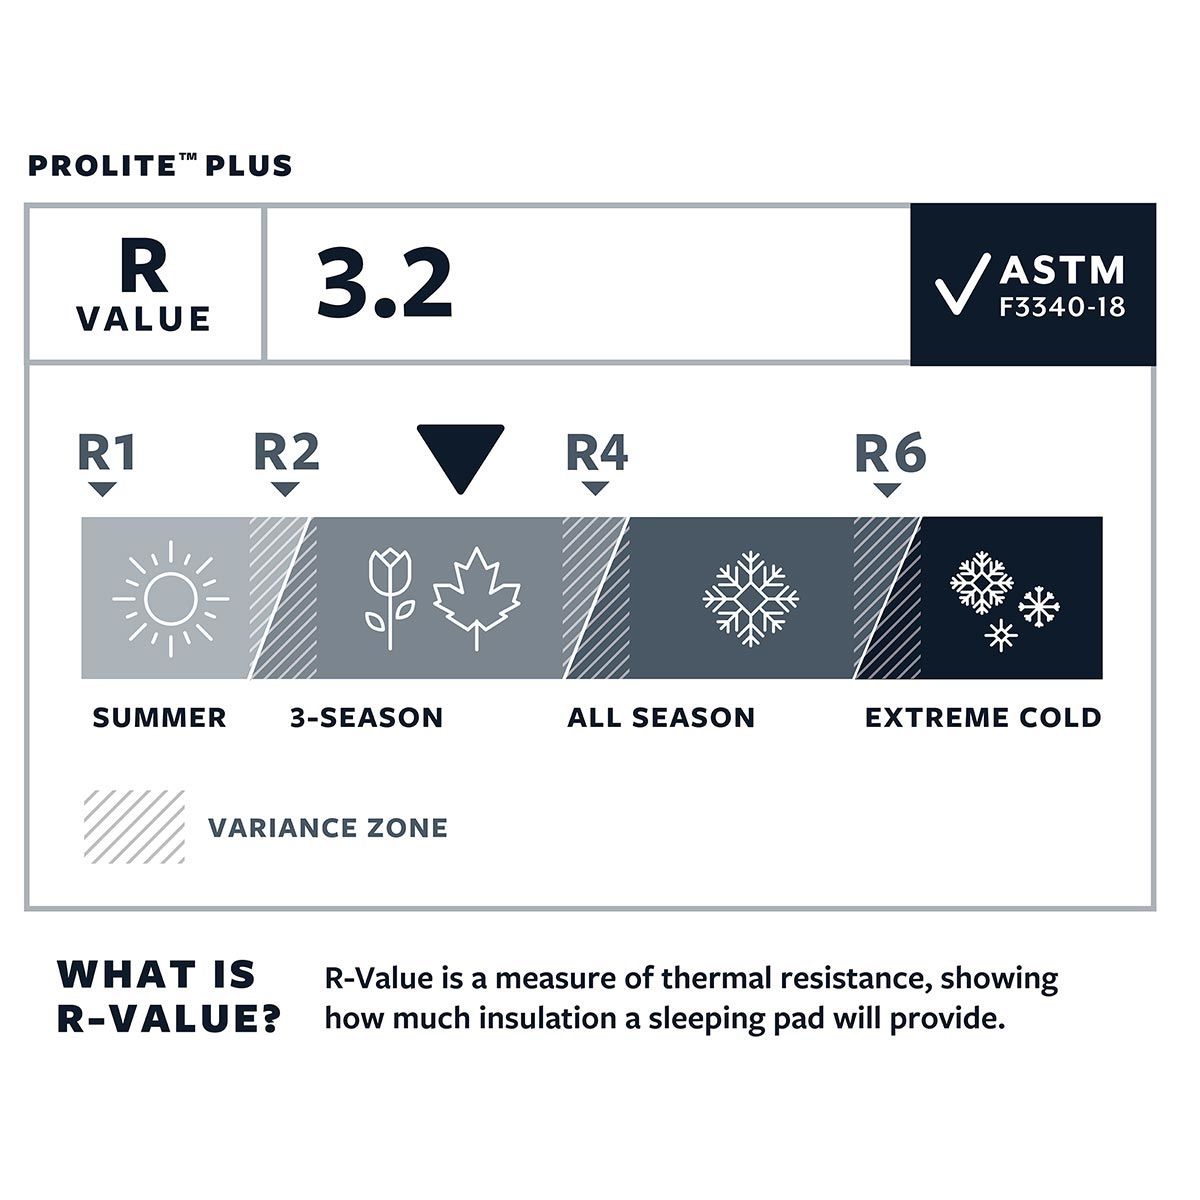 R-Value ProLite Plus Thermarest